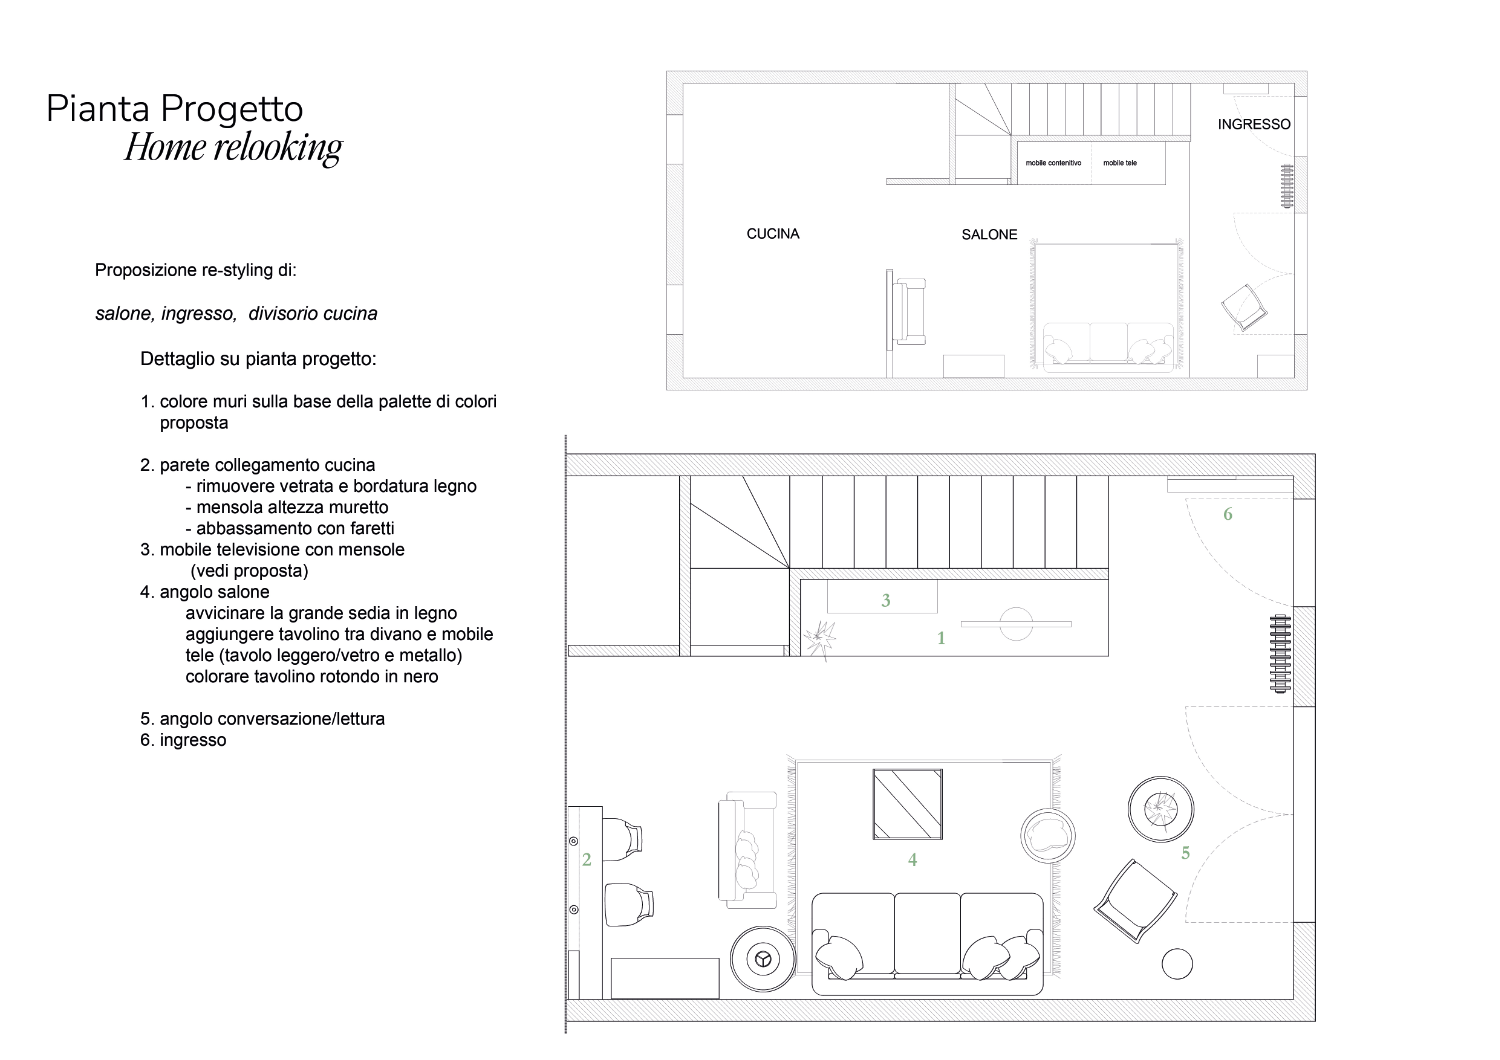 Pianta ridistribuzione spazi per il servizio di home relooking per villetta Legnano, a cura dello studio Elles Interior Design.